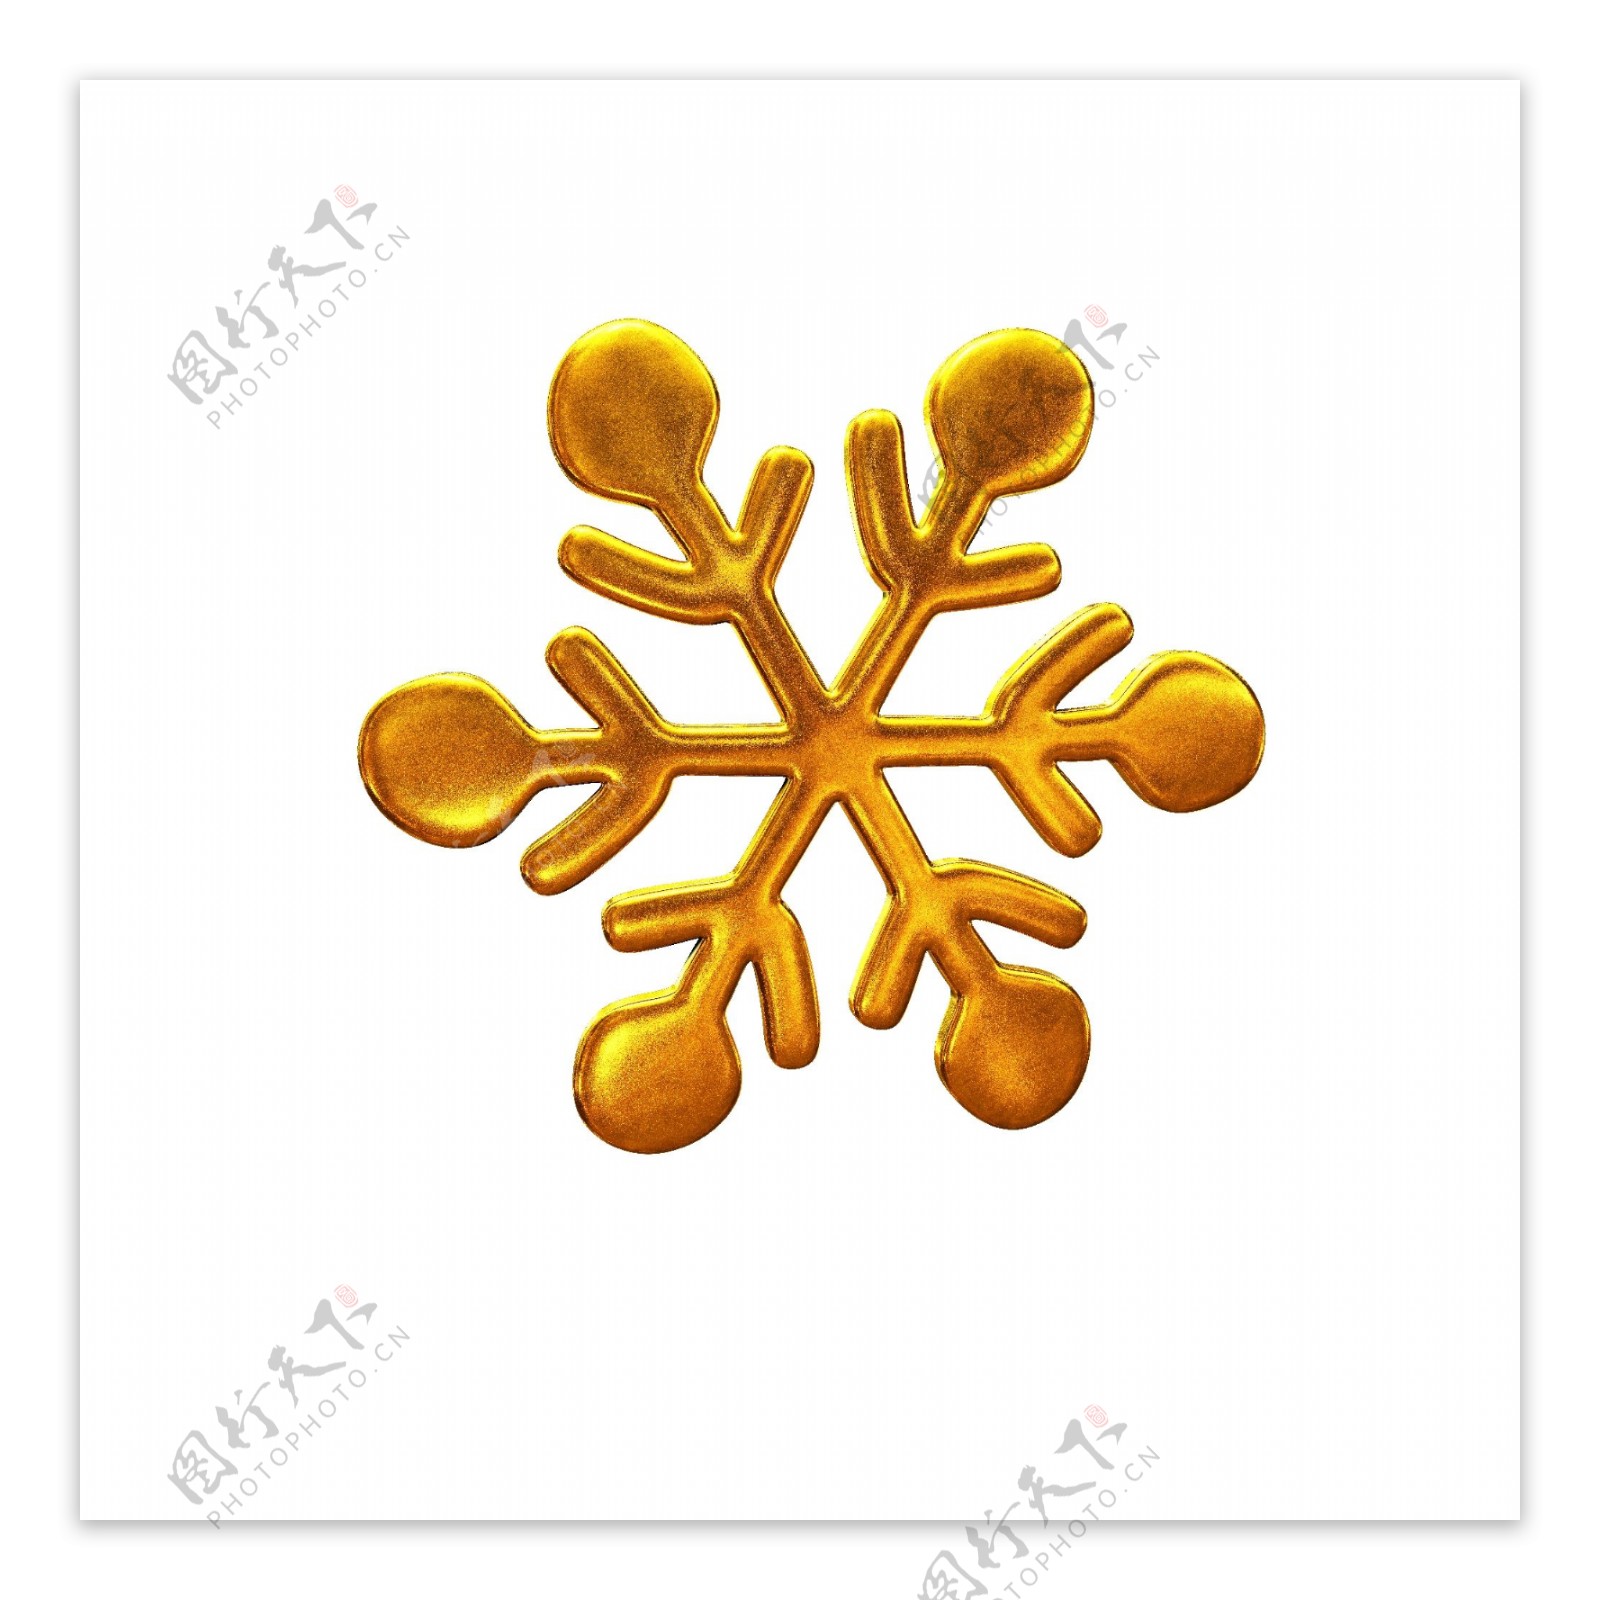 金色立体金属圣诞装饰雪花可商用元素